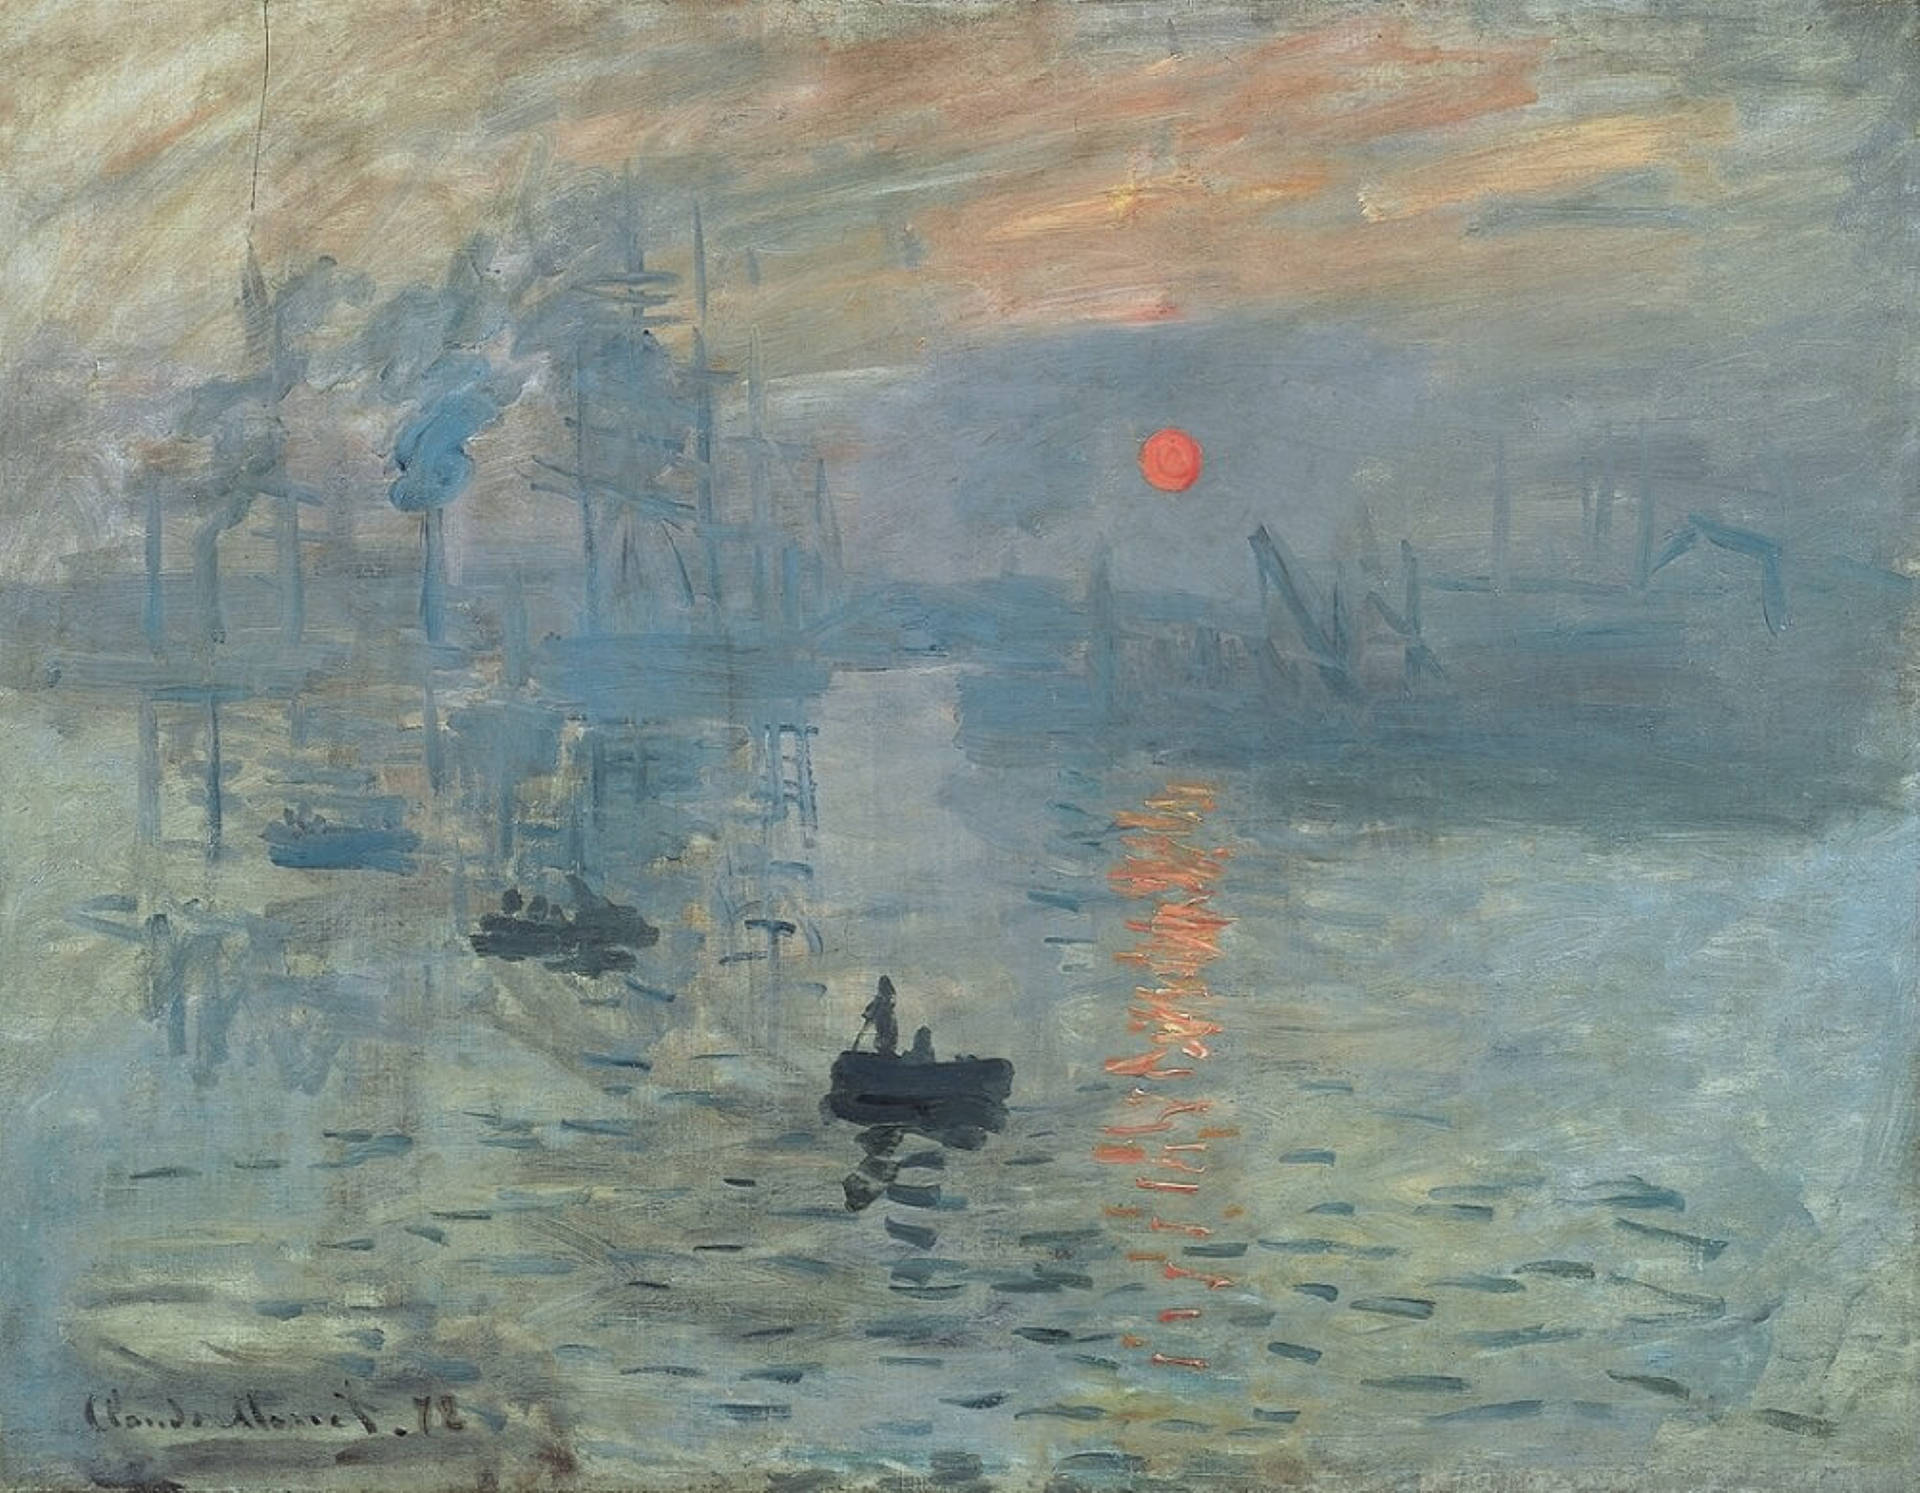 Claude Monet's Impression Sunrise